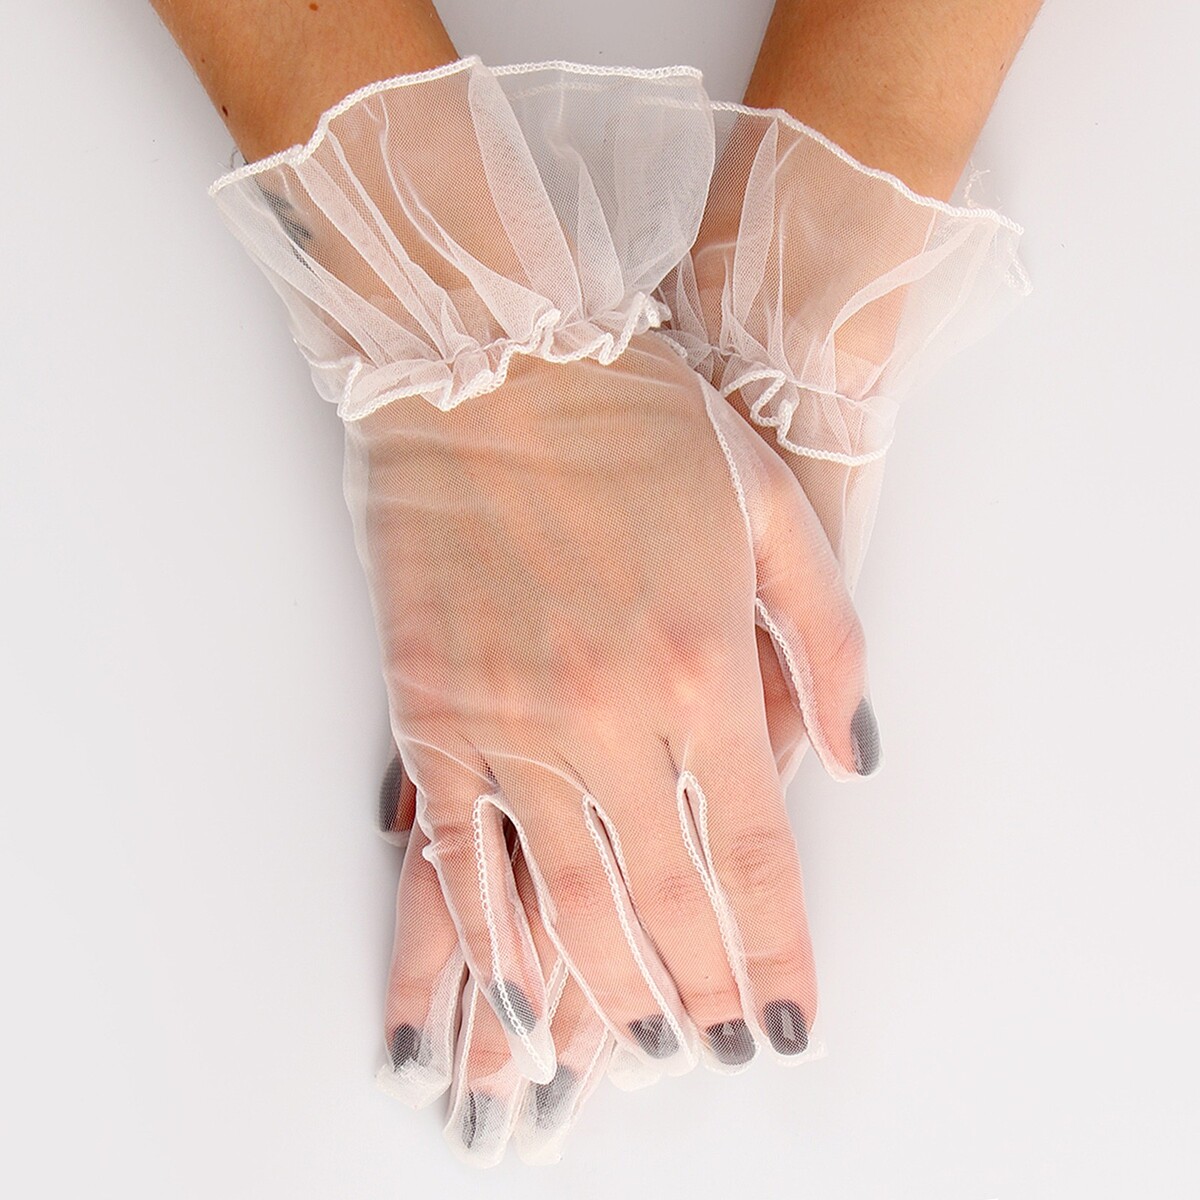 Карнавальный аксессуар - перчатки прозрачные с юбочкой, цвет белый карнавальный костюм batik 9014 к 21 базз лайтер белый 122